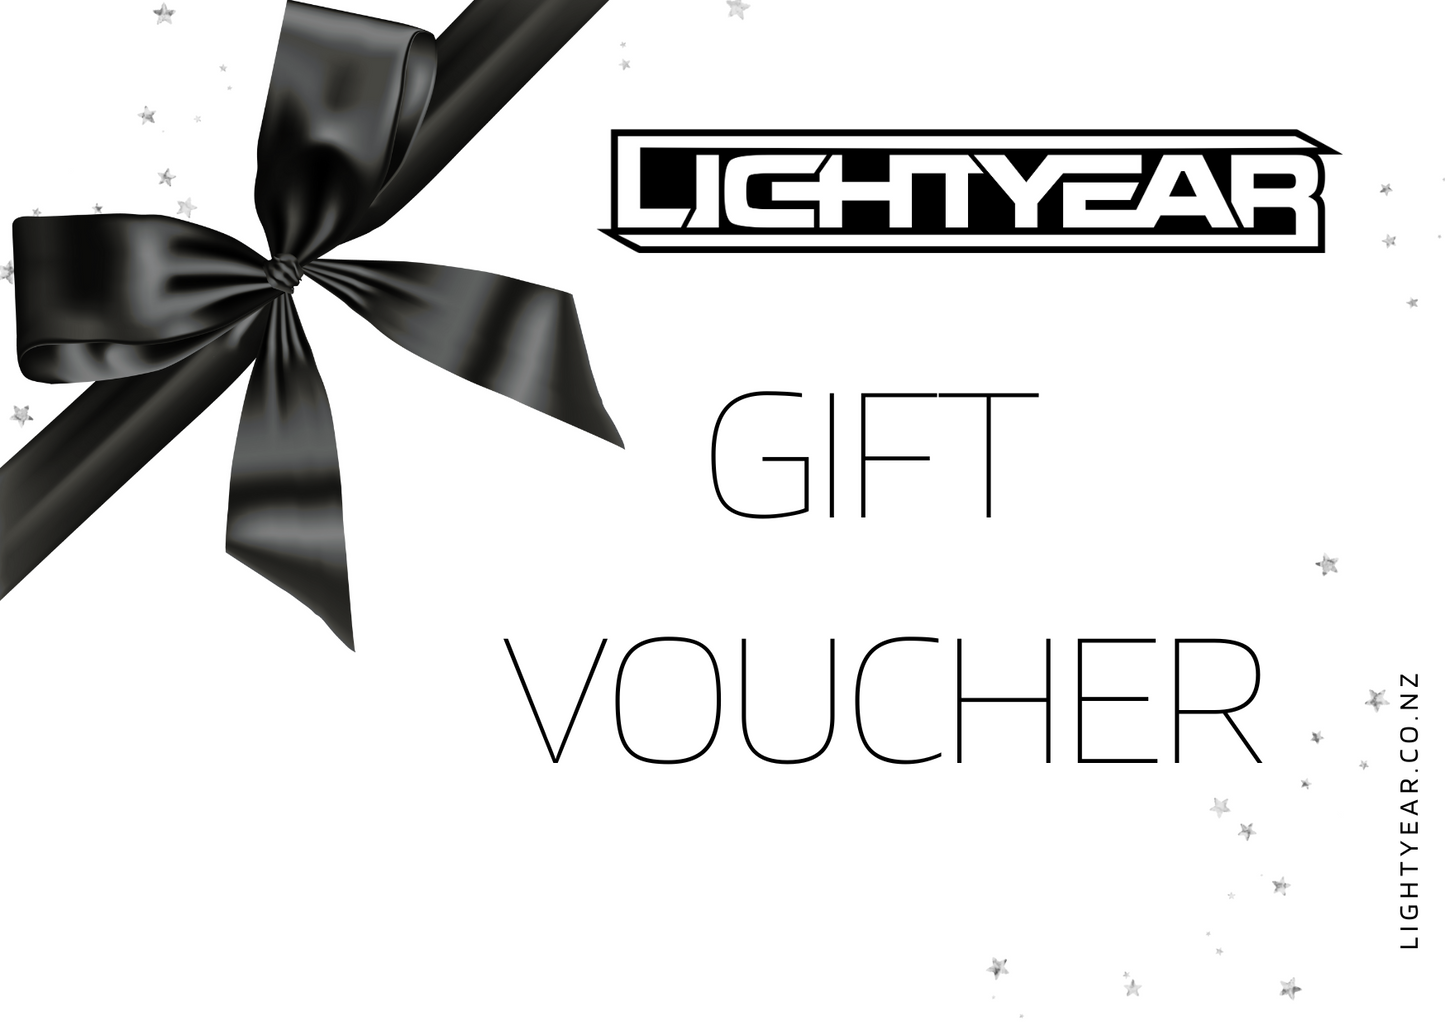 Lightyear Gift Voucher